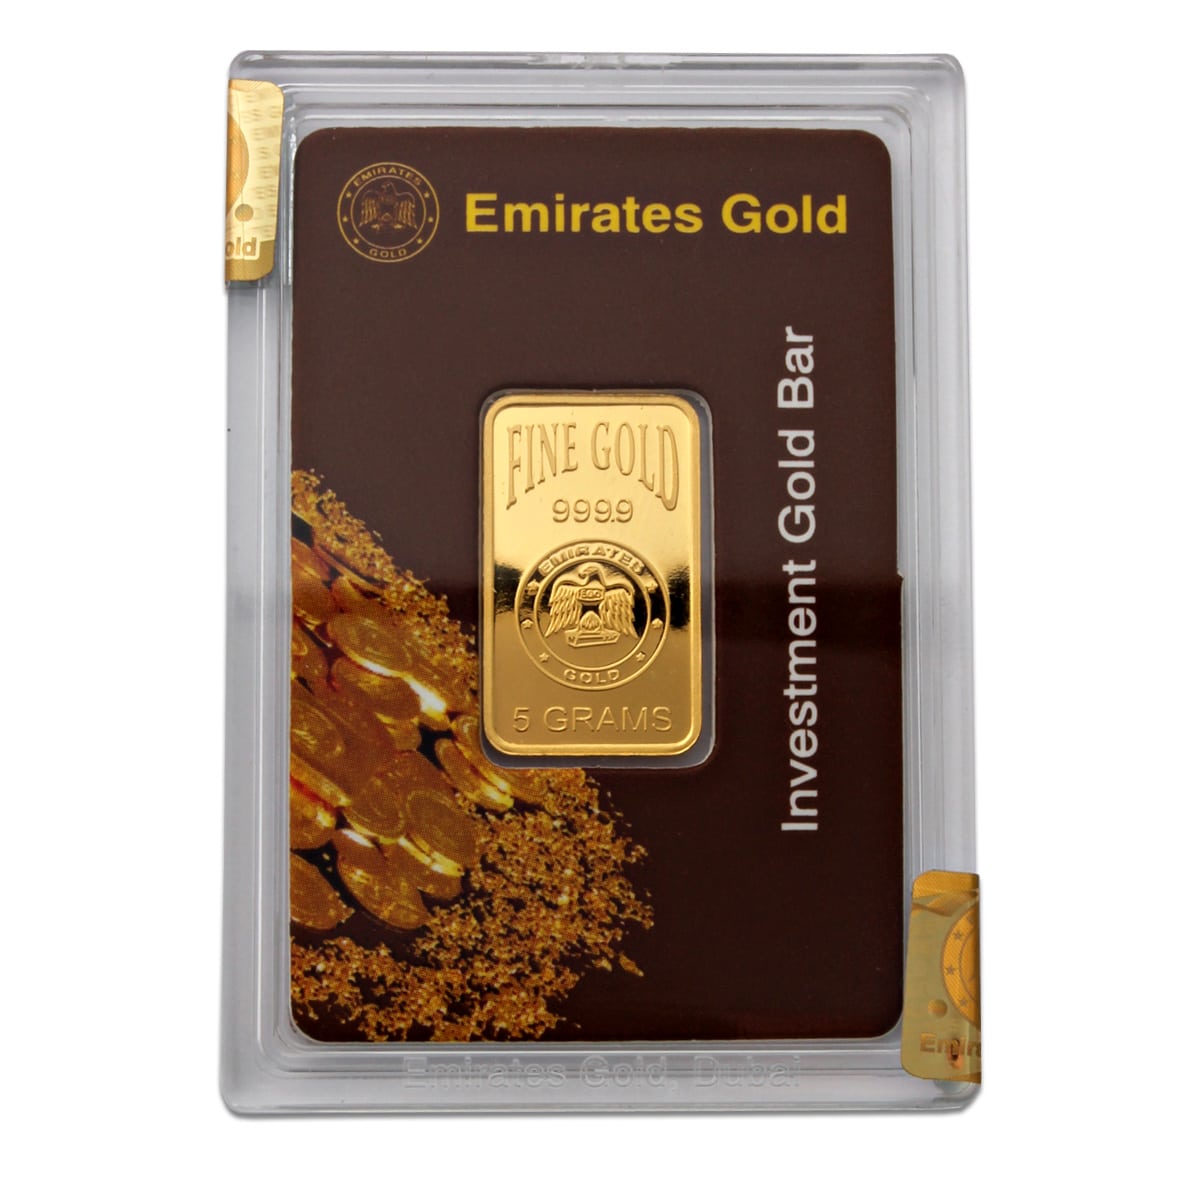 Prices of gold bullion in UAE